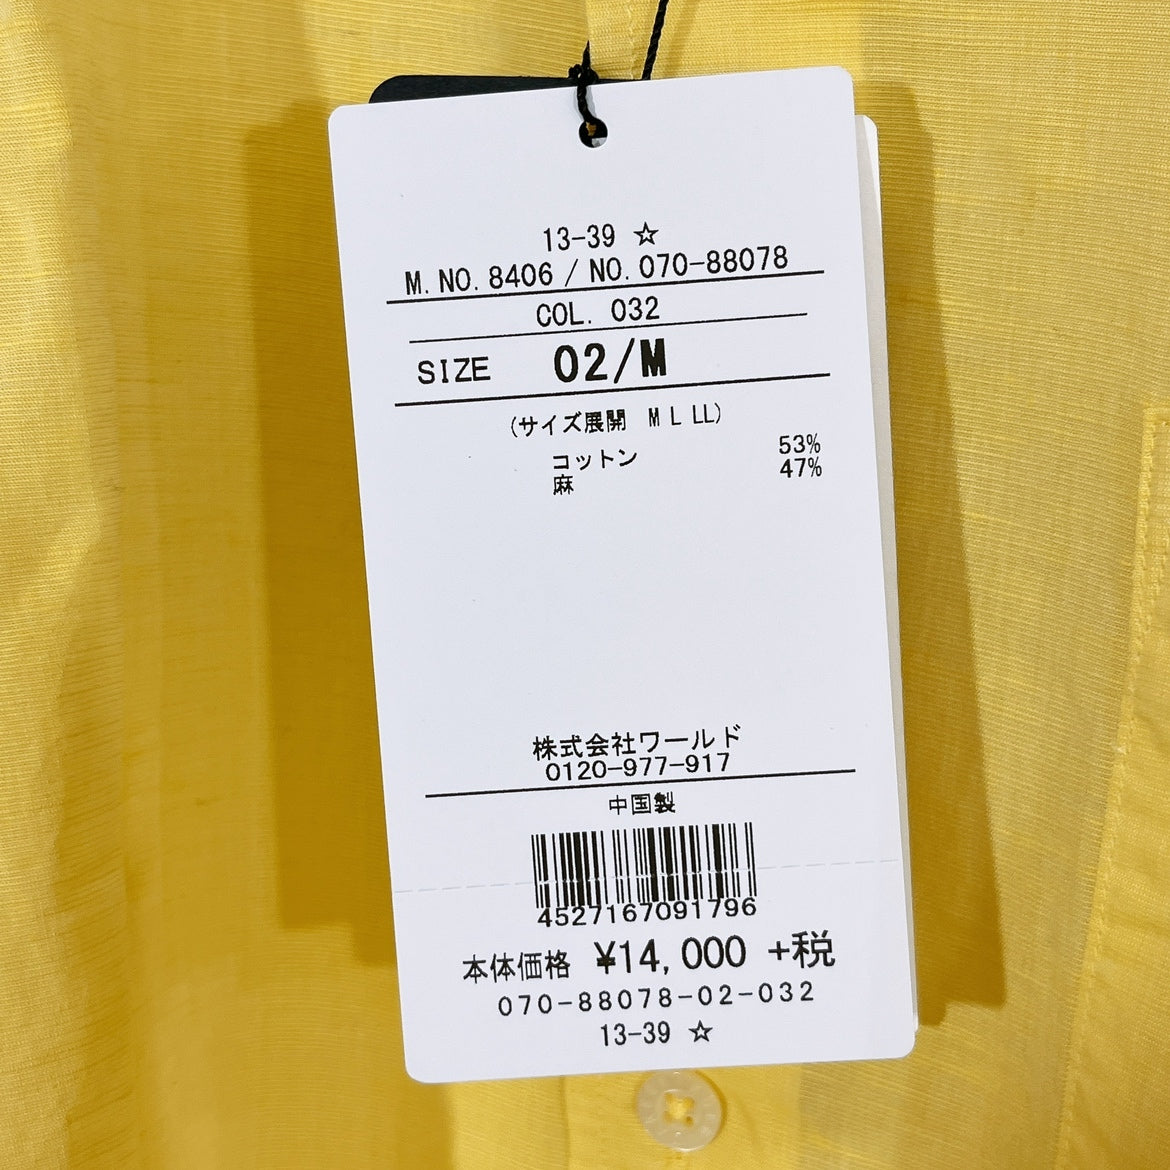 新品 メンズ2 M TAKEOKIKUCHI シャツ イエロー 黄色 長袖 薄手 未使用 タグ付き 袖ボタン タケオキクチ 【13565】